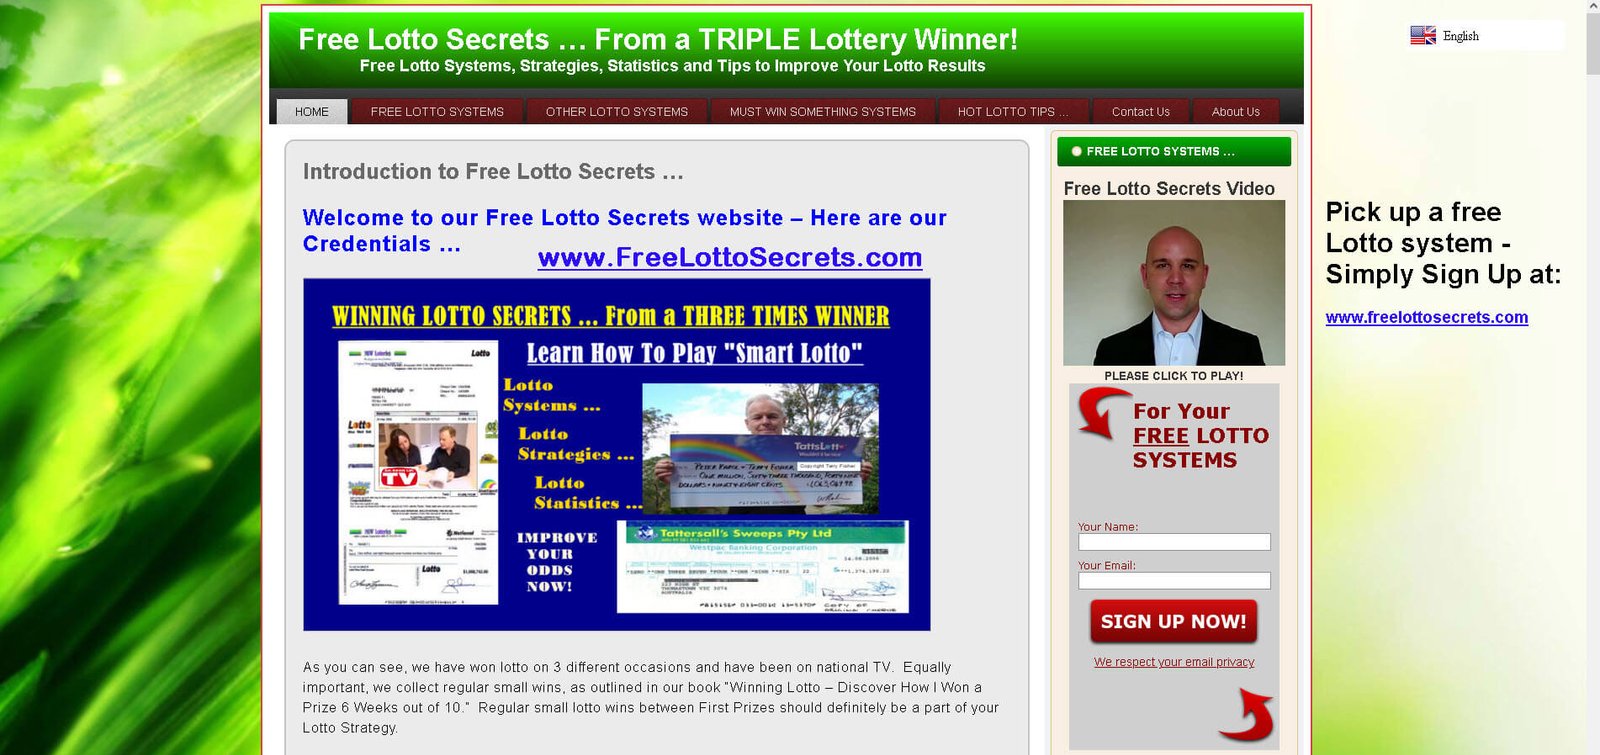 Free Lotto Secrets